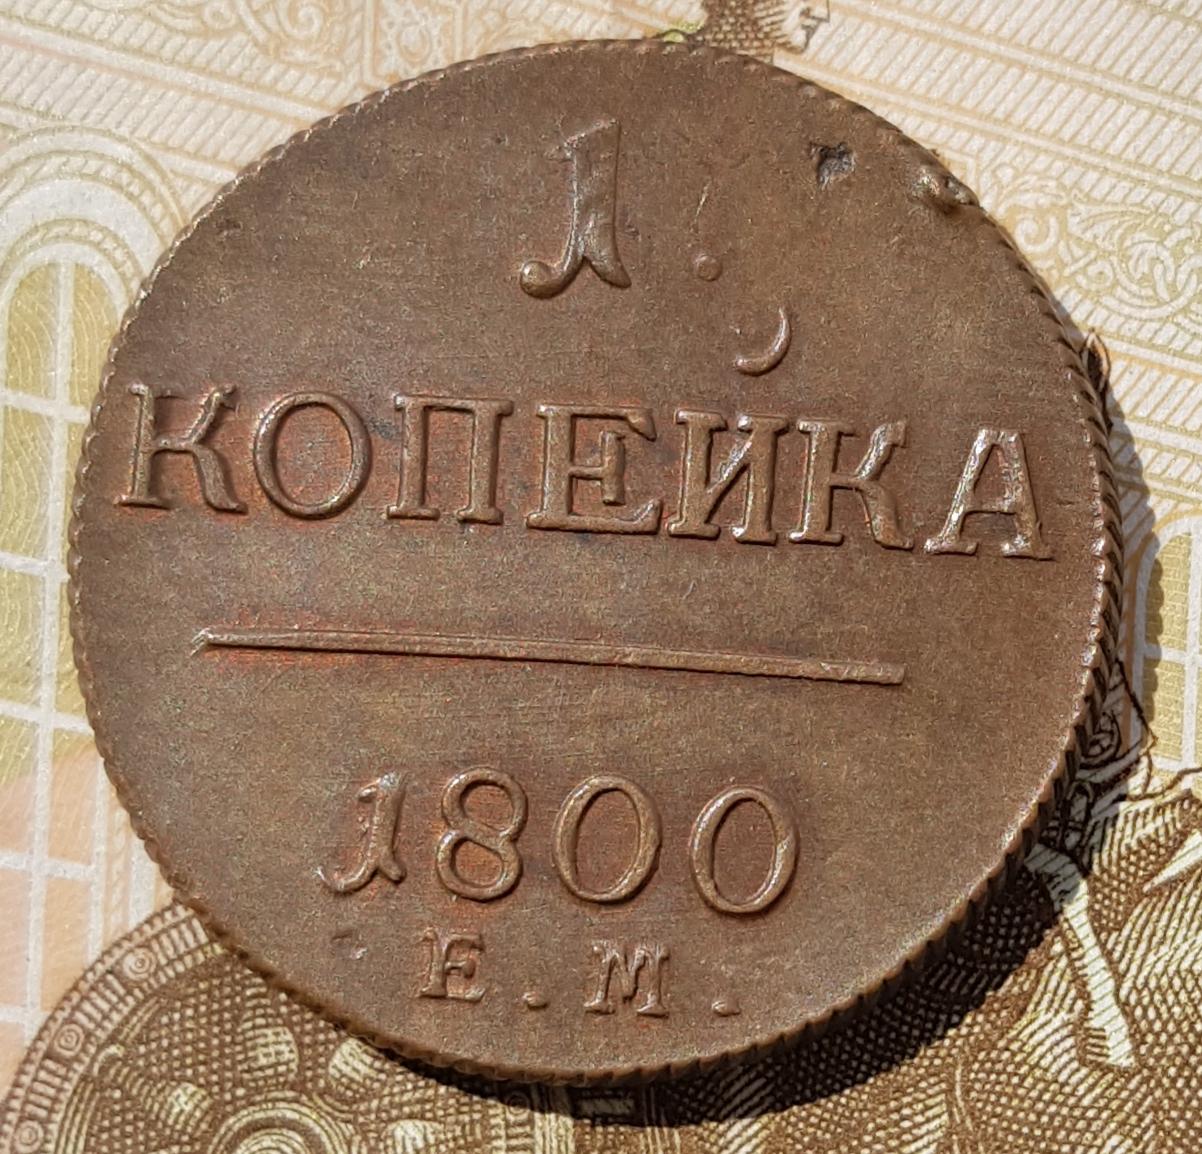 60 коп в рубли